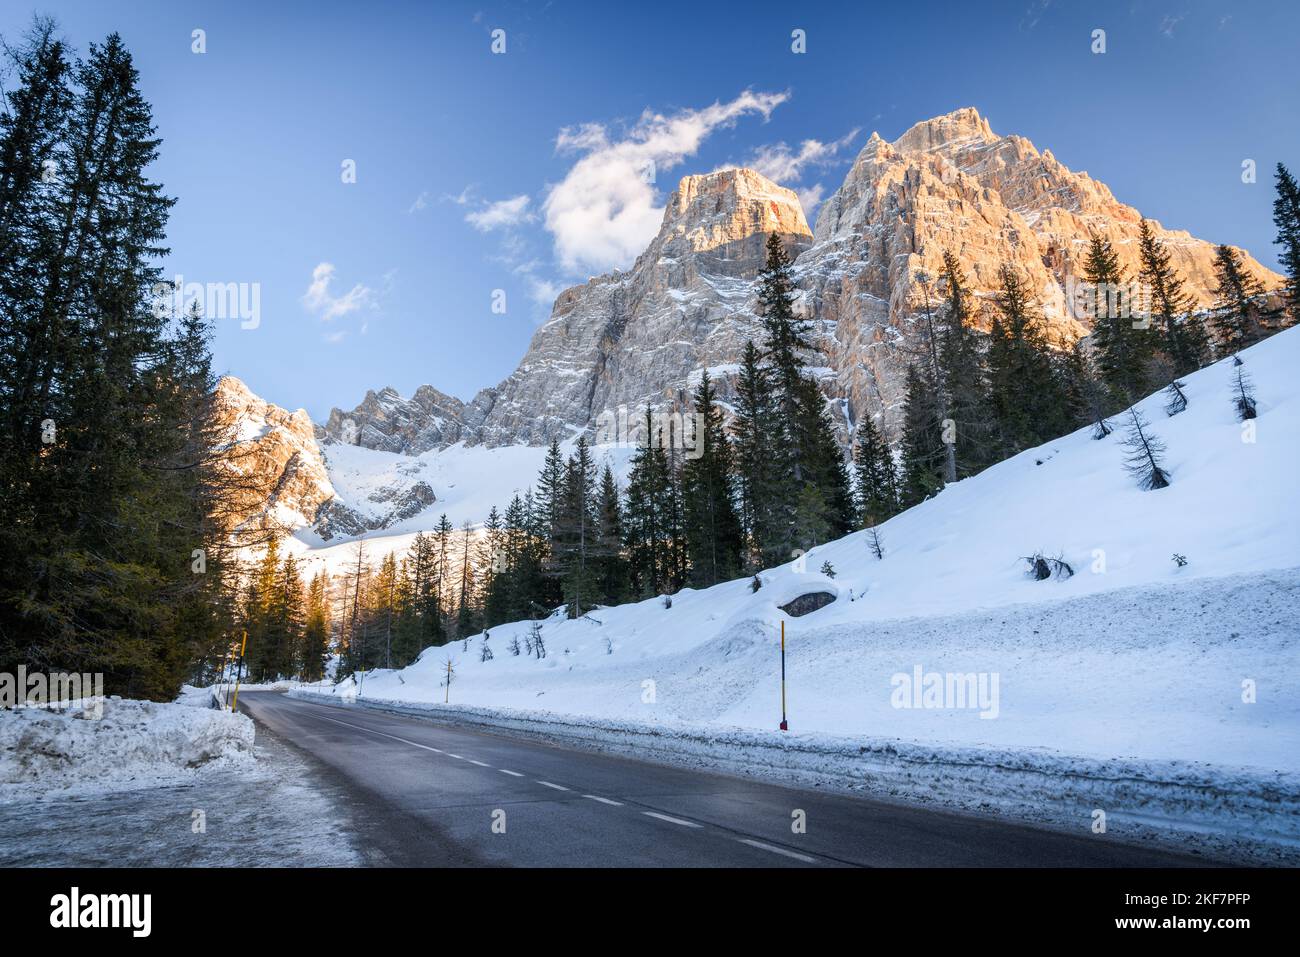 Tramo recto vacío de una carretera de montaña que corre al pie de un alto pico rocoso cubierto de nieve en un día claro de invierno Foto de stock